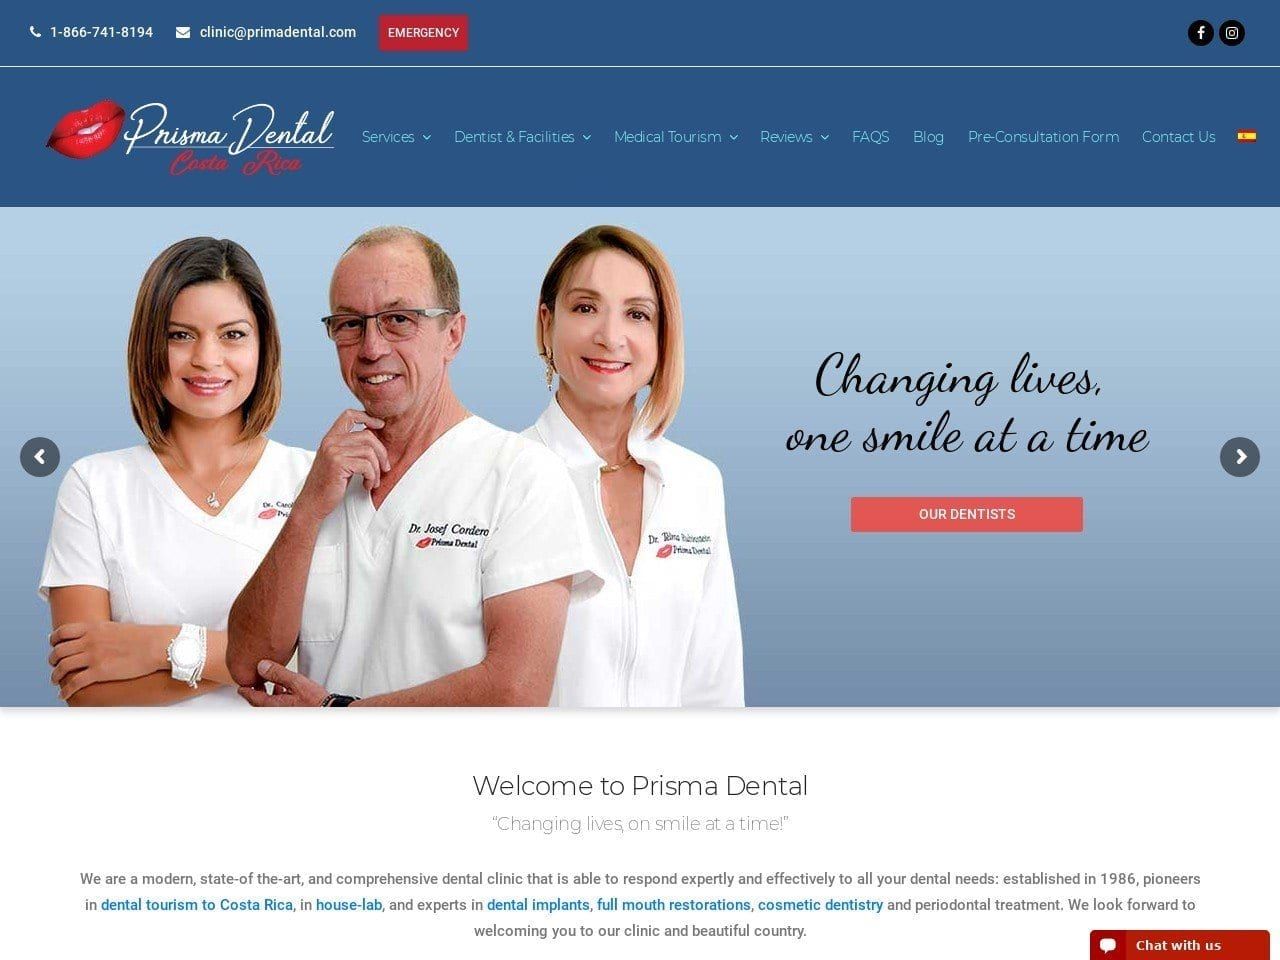 Prisma Dental Website Screenshot from prismadental.com